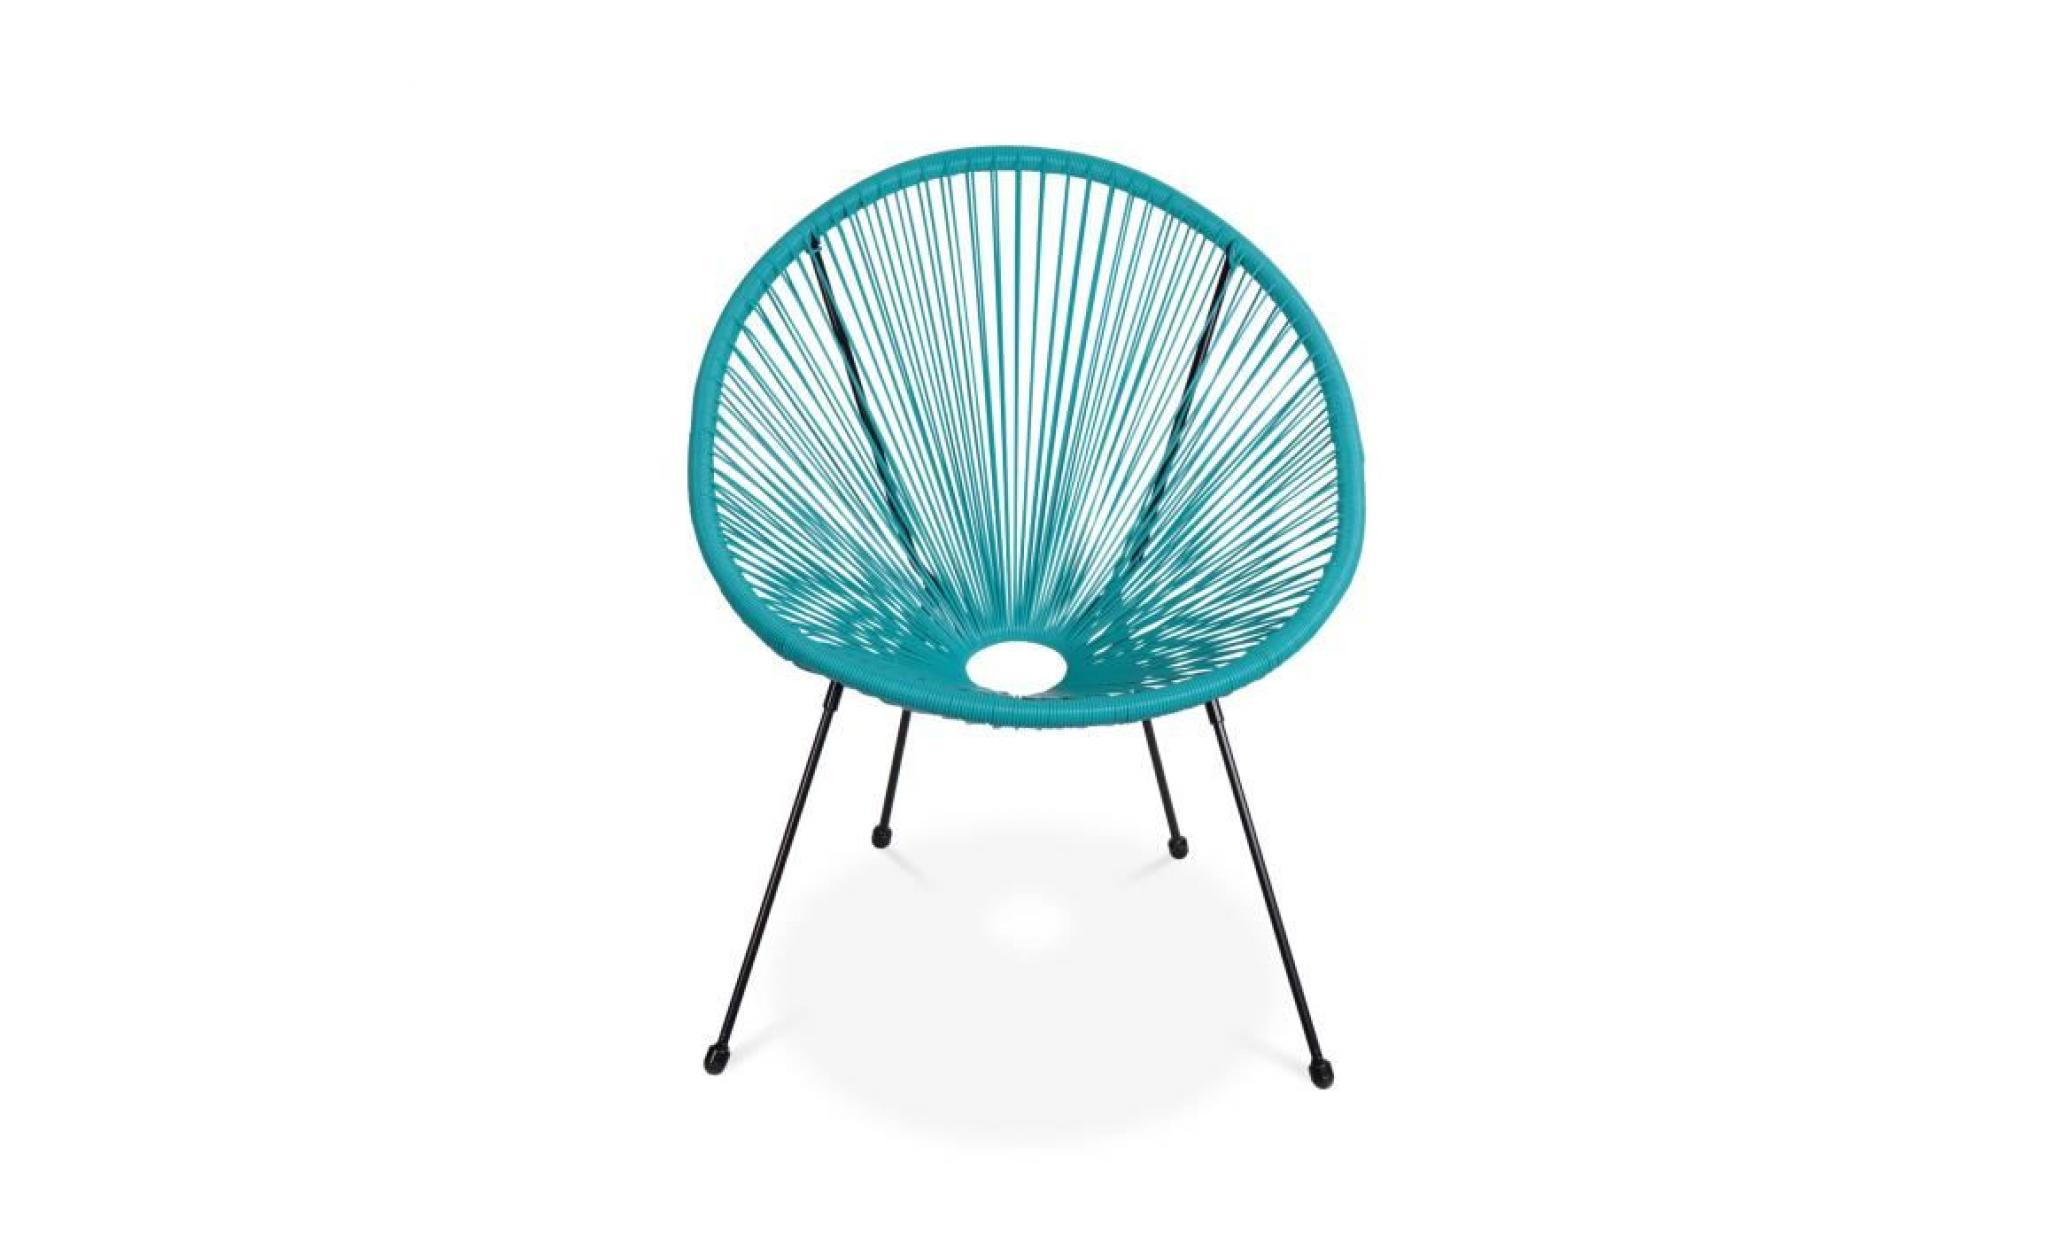 lot de 2 fauteuils design oeuf   acapulco turquoise   fauteuils 4 pieds design rétro, cordage plastique, intérieur / extérieur pas cher